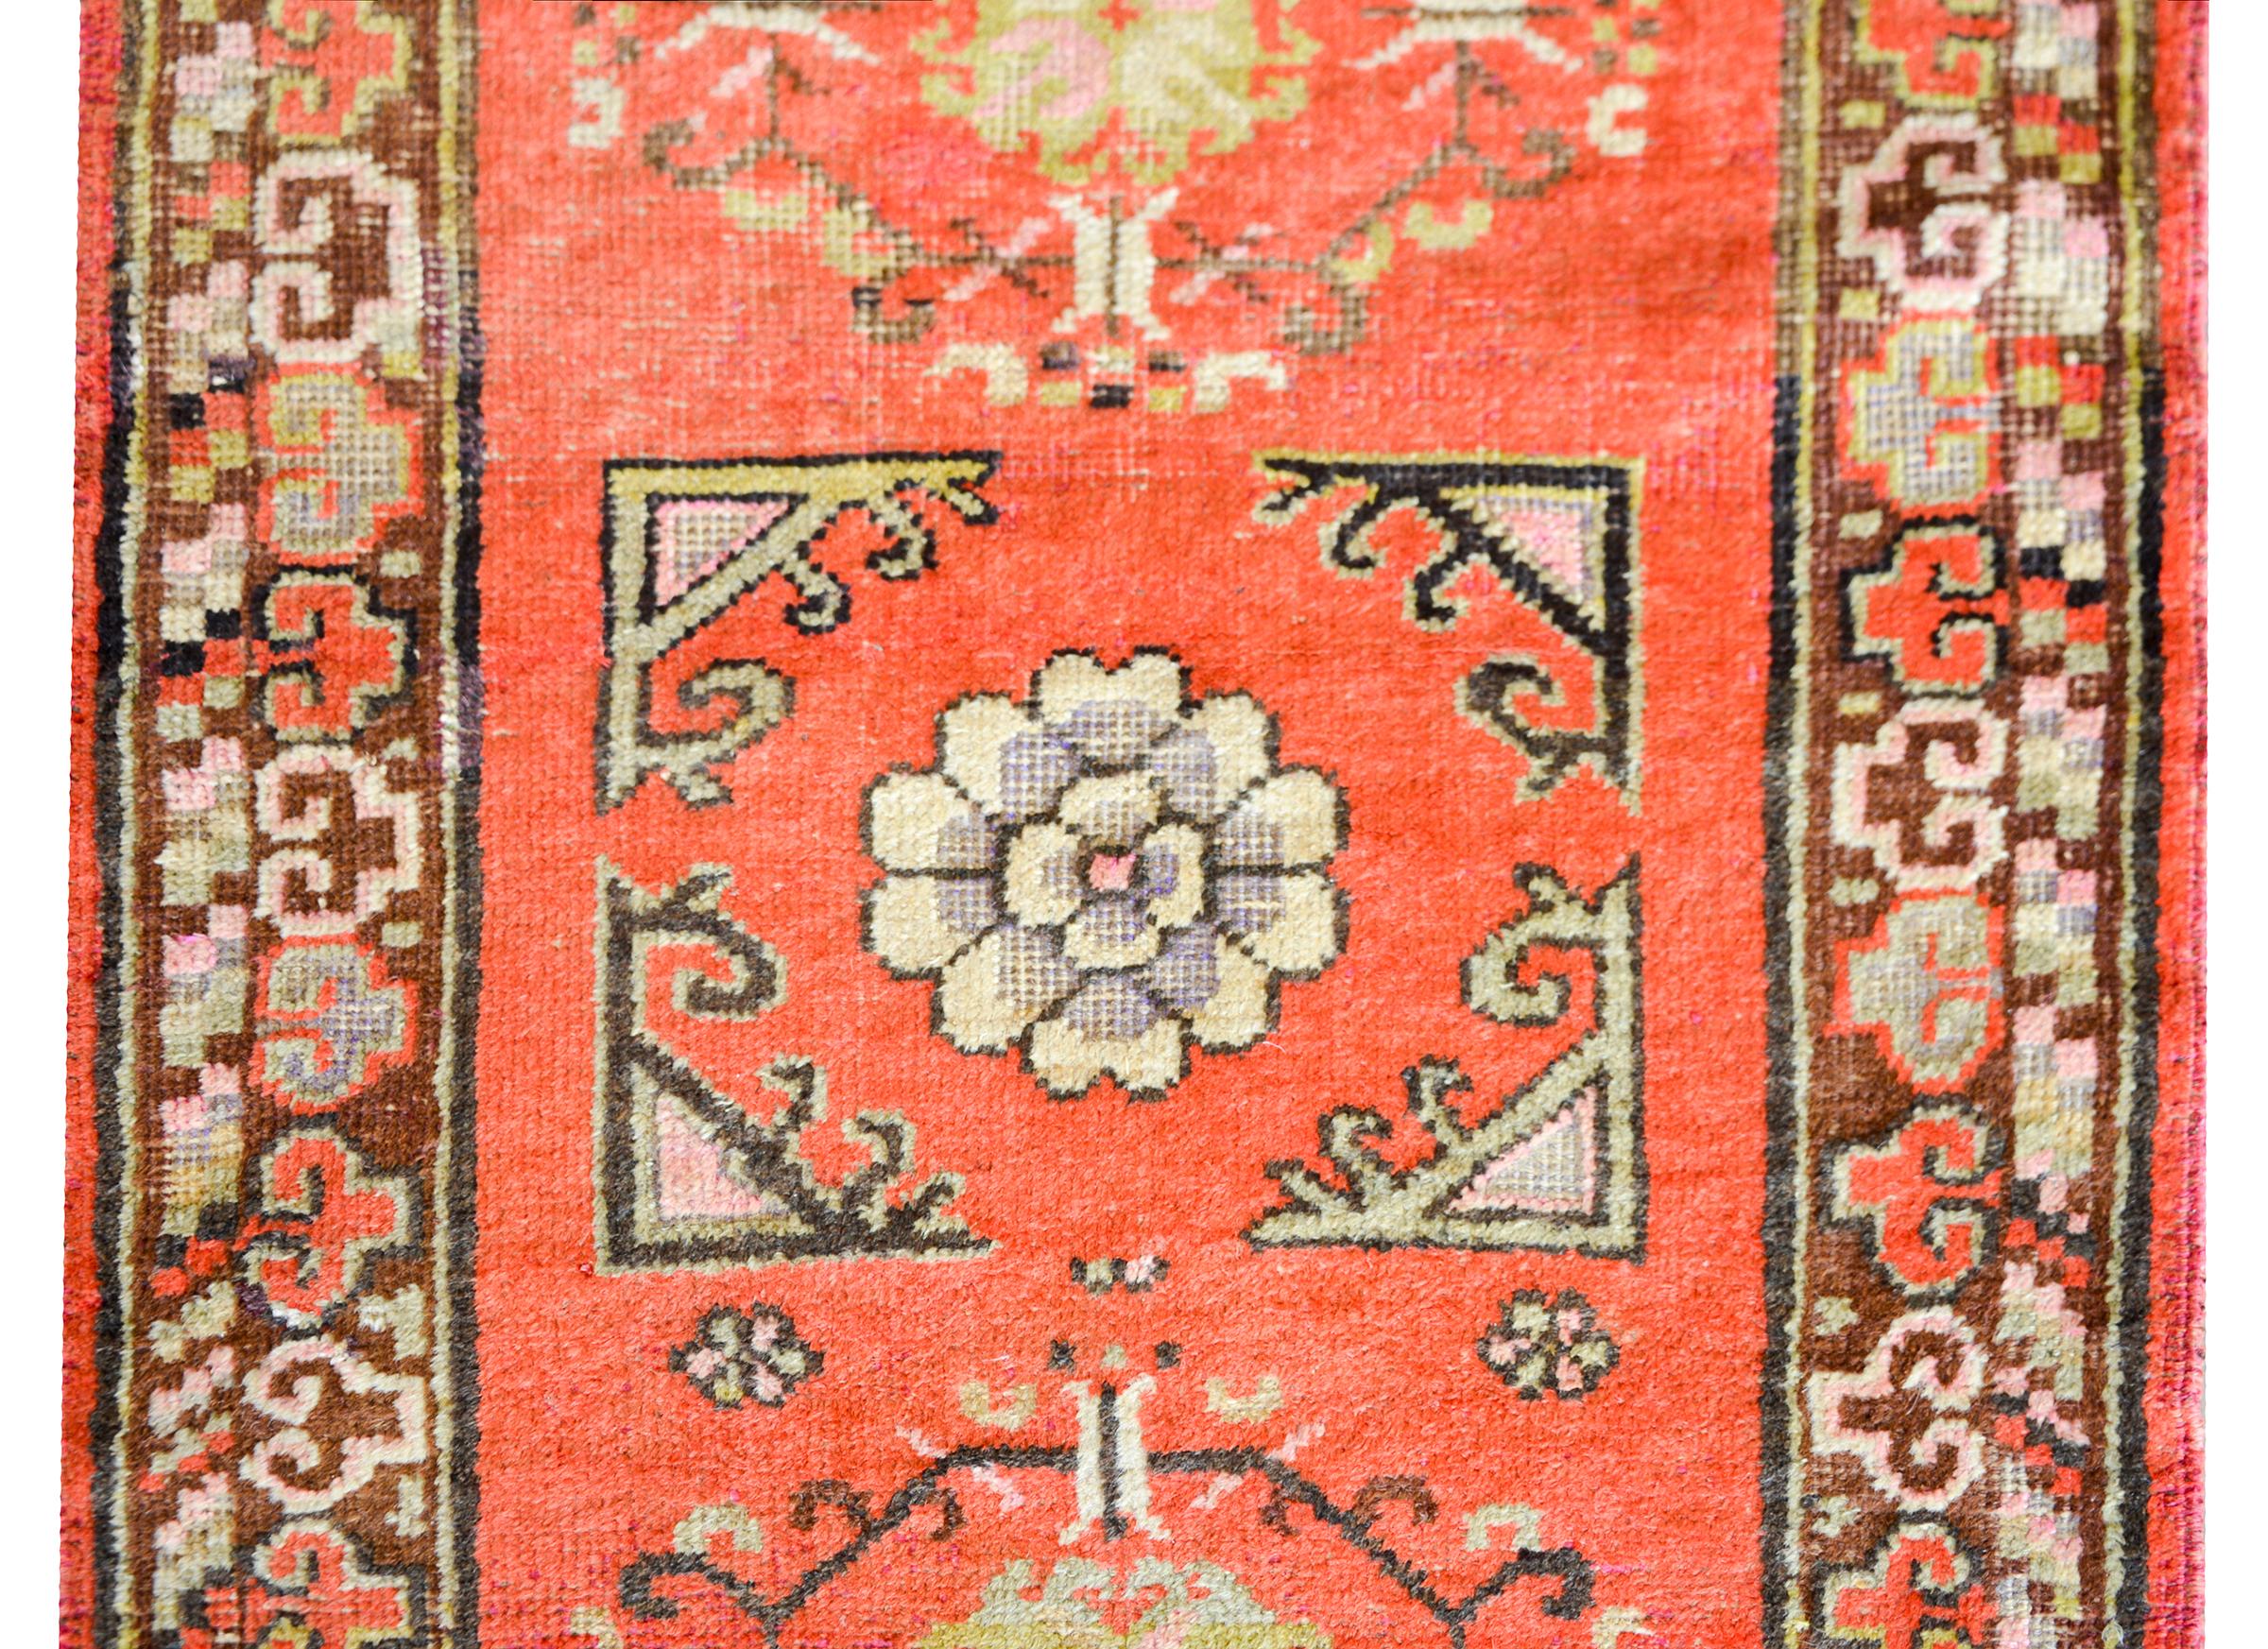 Un beau tapis Khotan du début du 20e siècle du Turkestan oriental avec plusieurs médaillons avec des fleurs stylisées tissées dans des couleurs sourdes induisant de l'or, du cramoisi, du rose et du brun sur un fond de couleur corail, et entouré